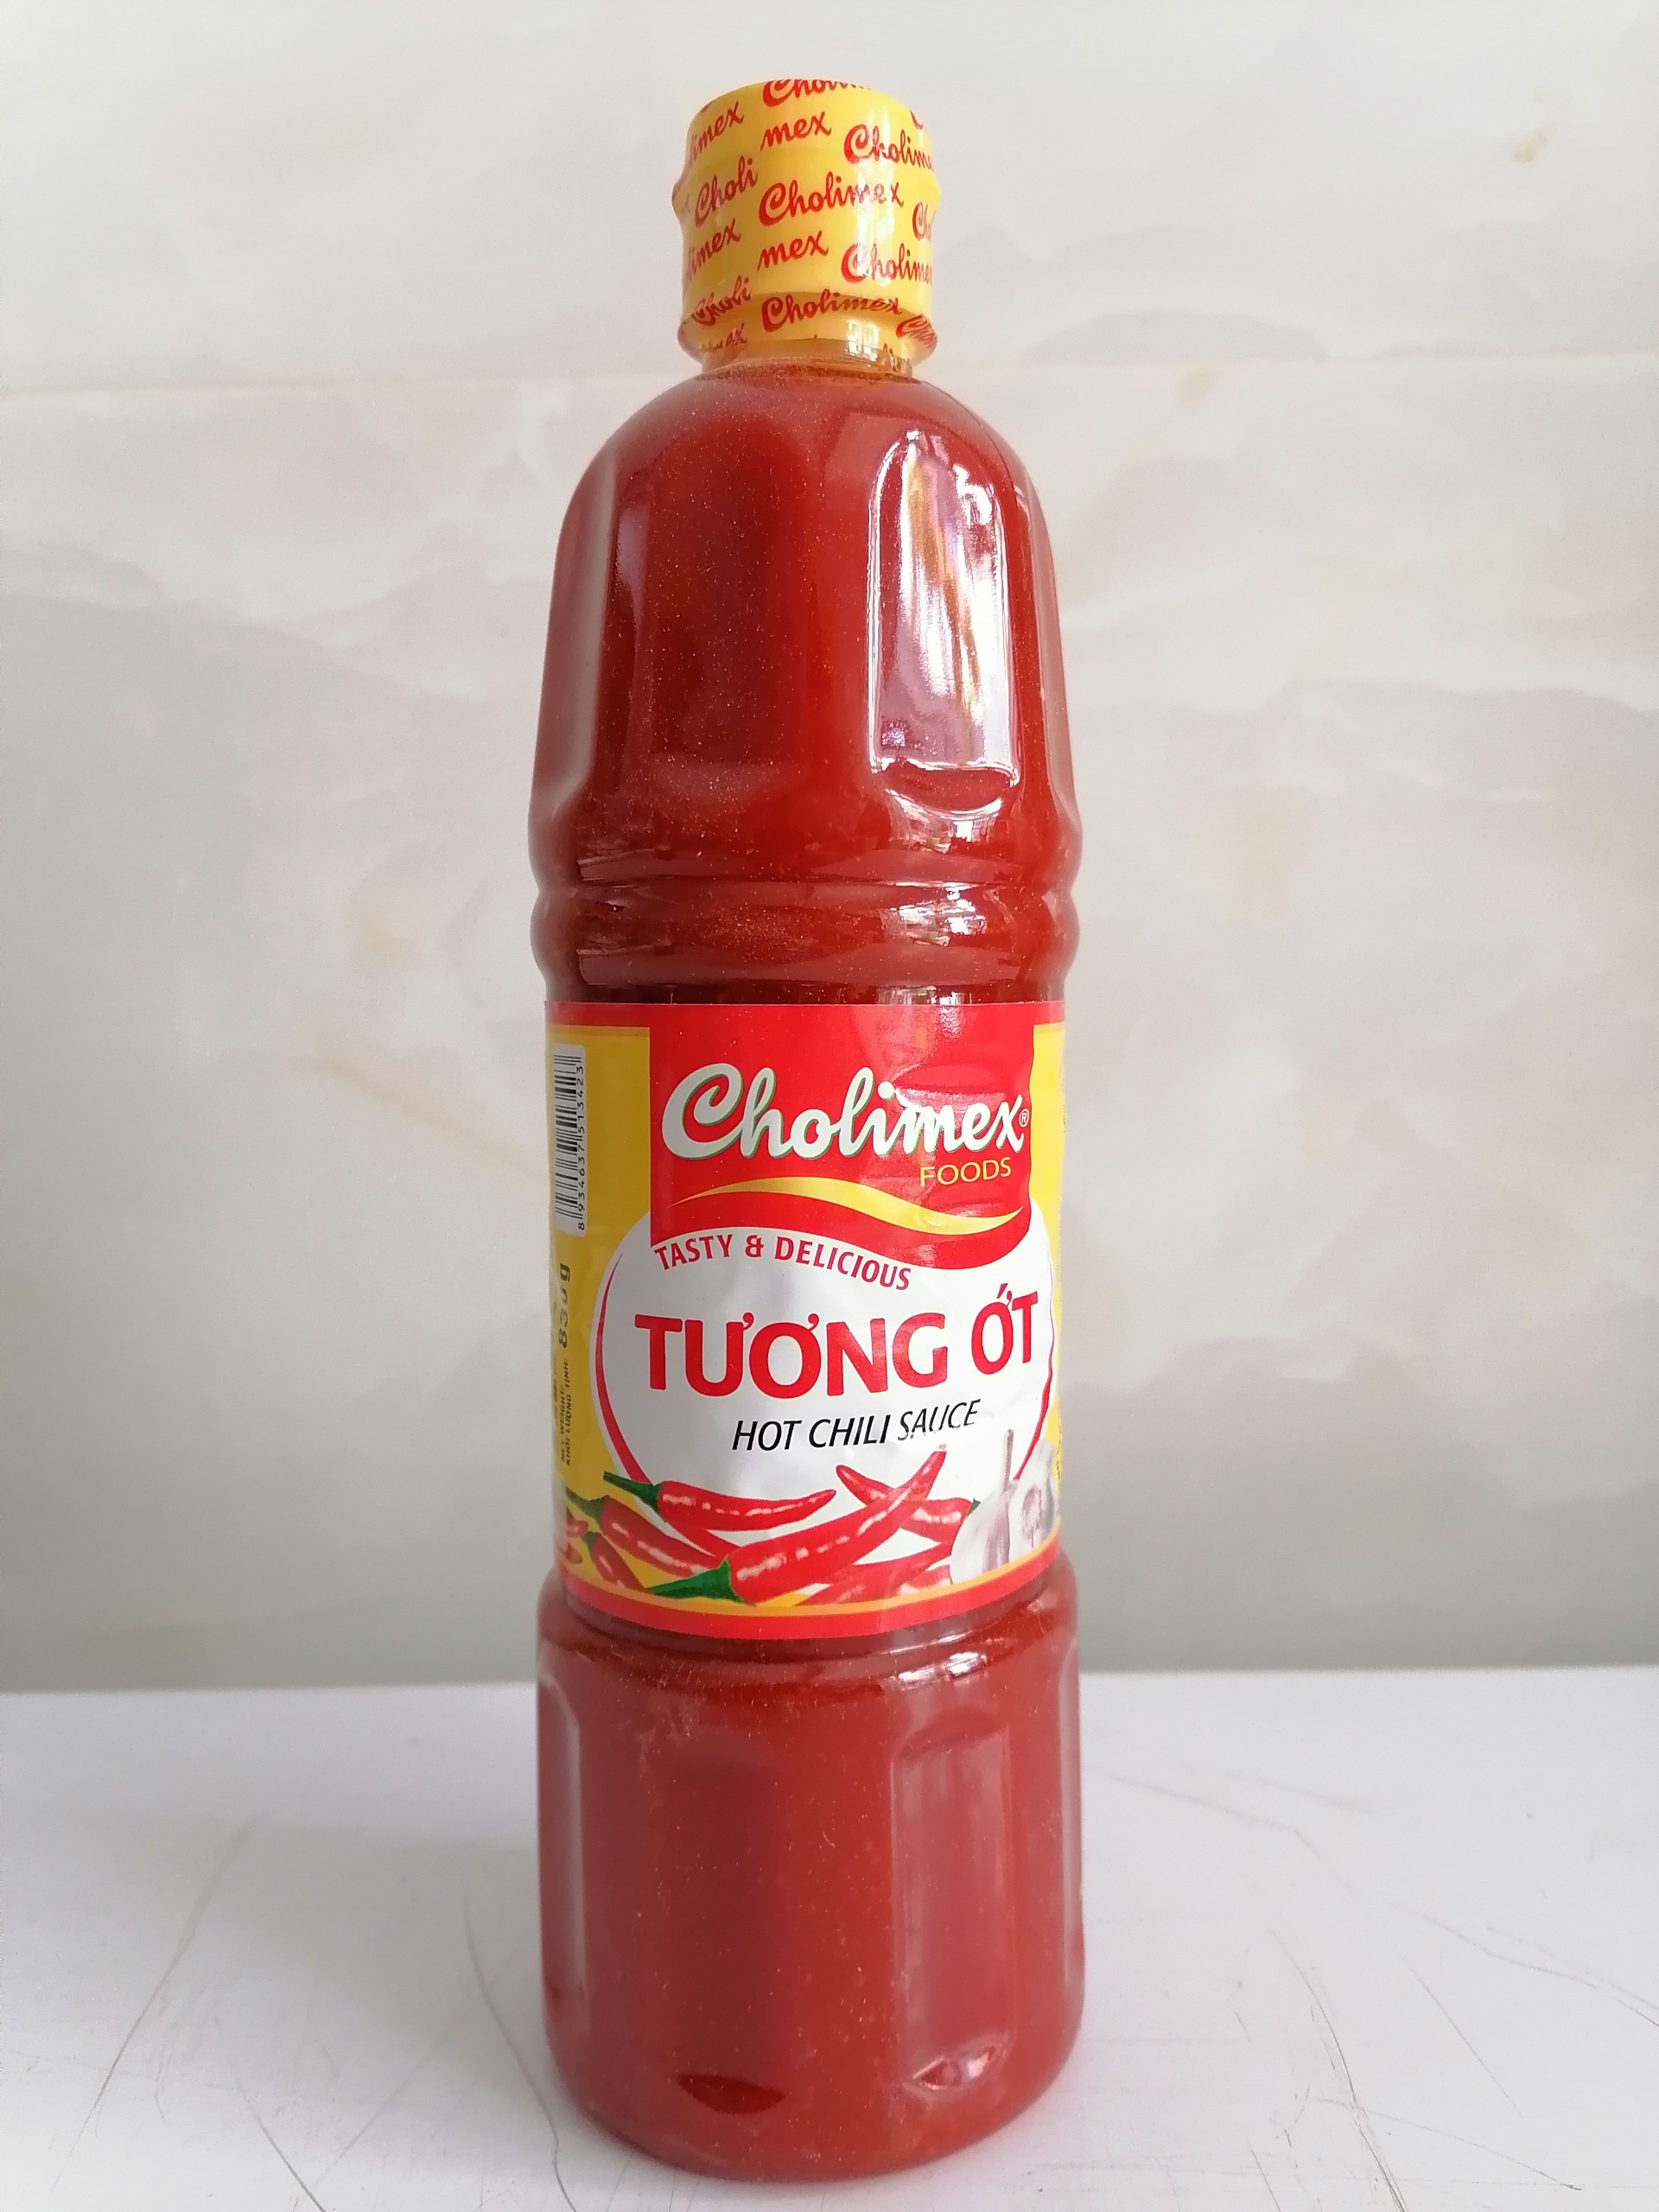 830g Tương ớt VN CHOLIMEX Hot Chili Sauce choli-hk